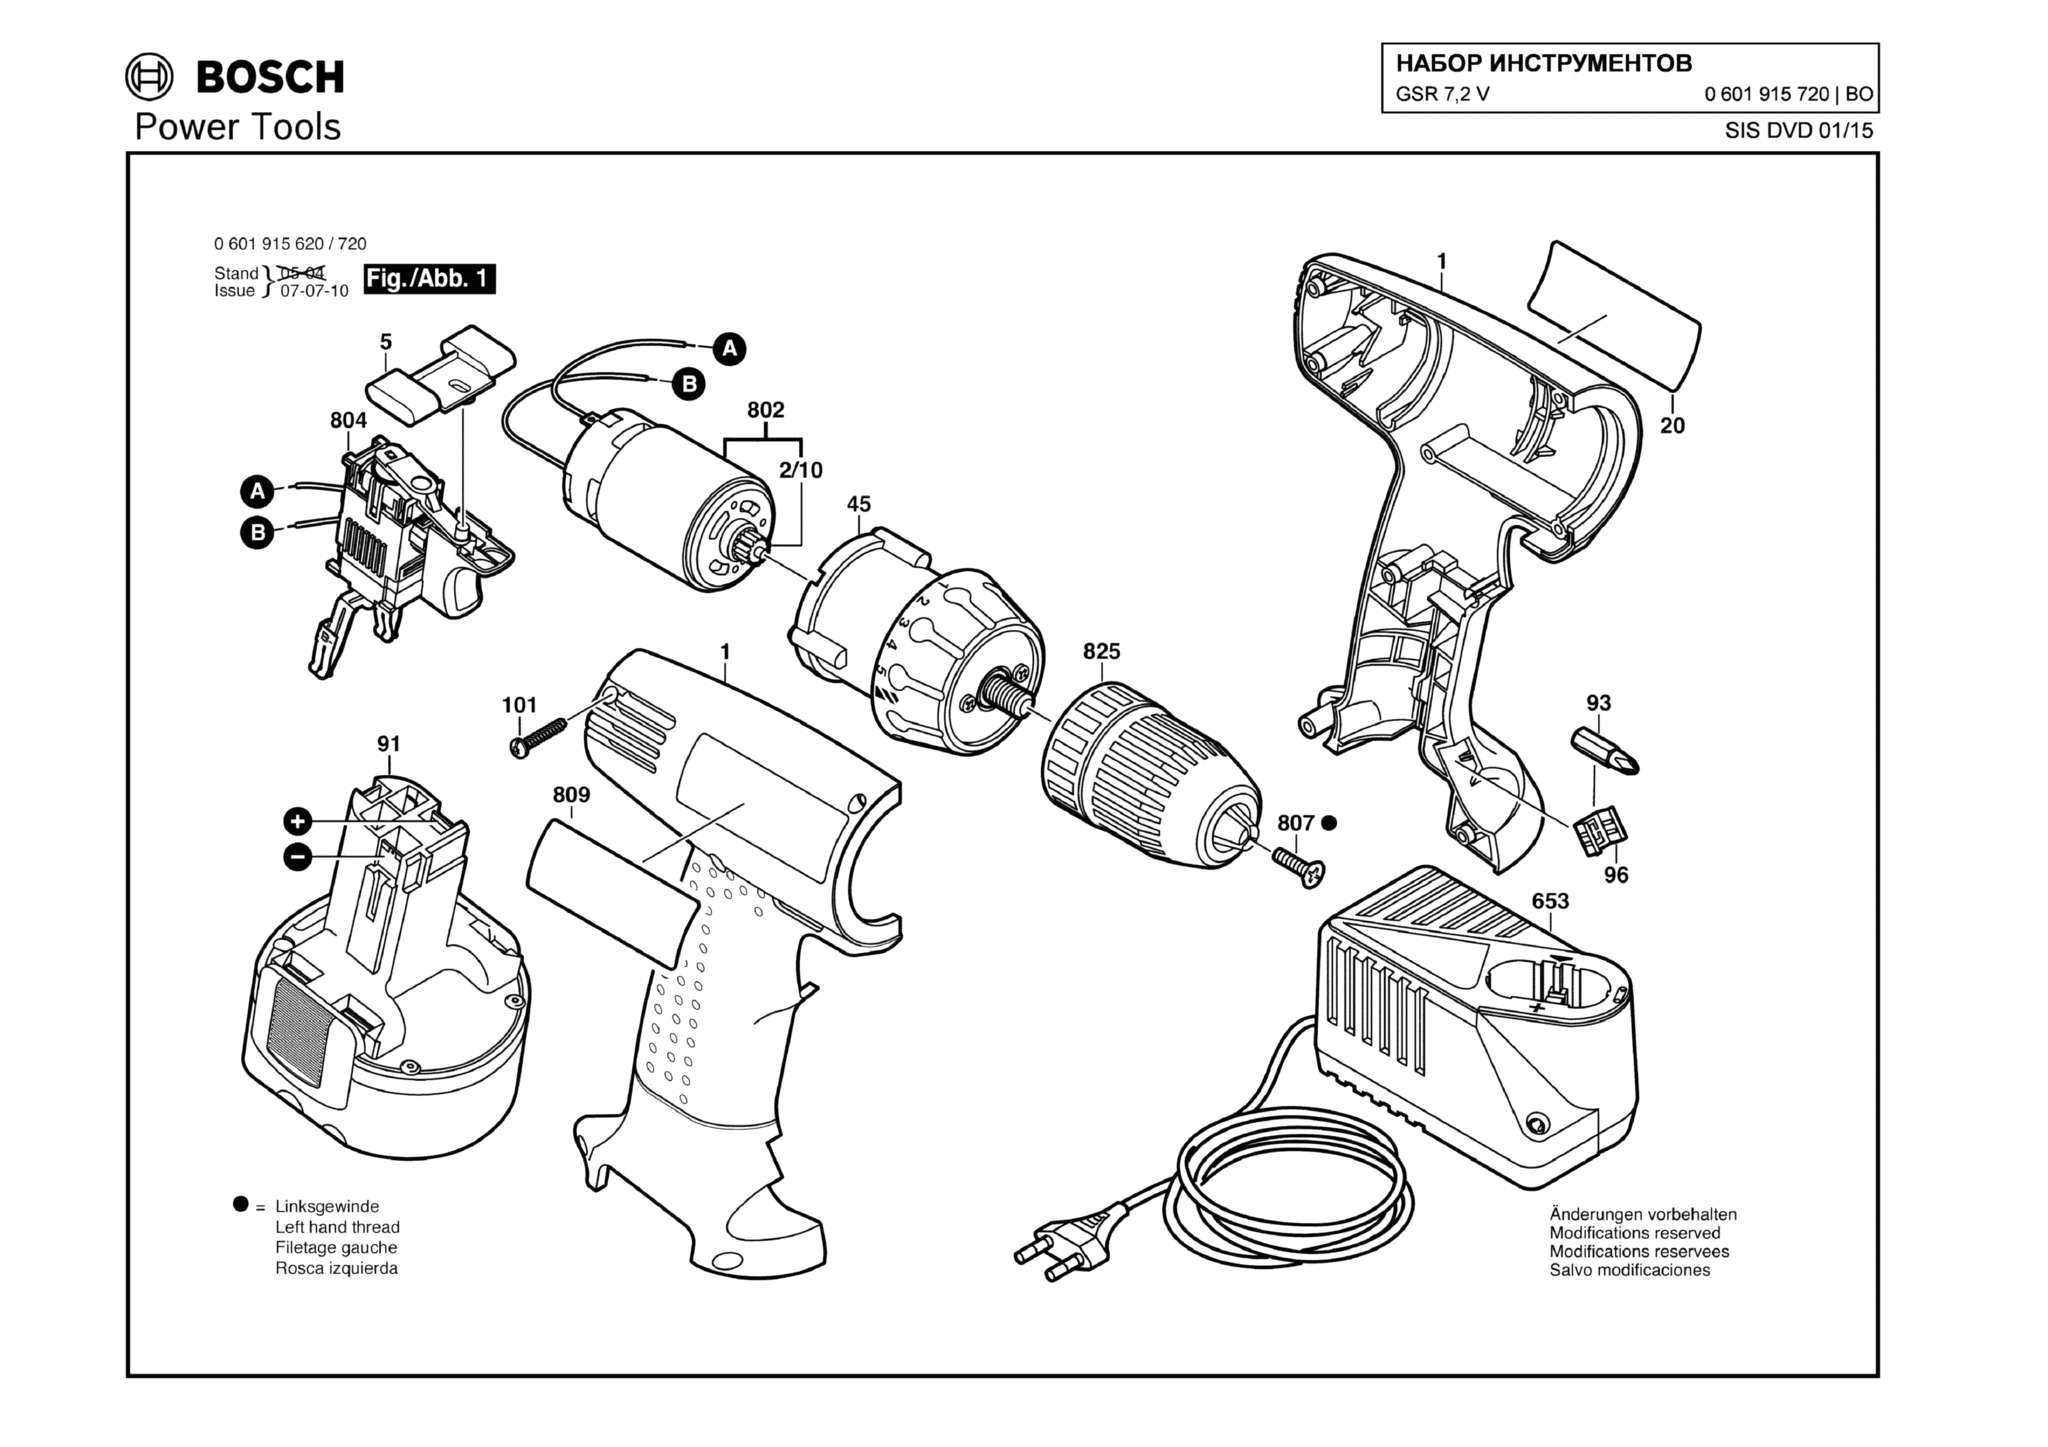 Запчасти, схема и деталировка Bosch GSR 7,2 V (ТИП 0601915720)